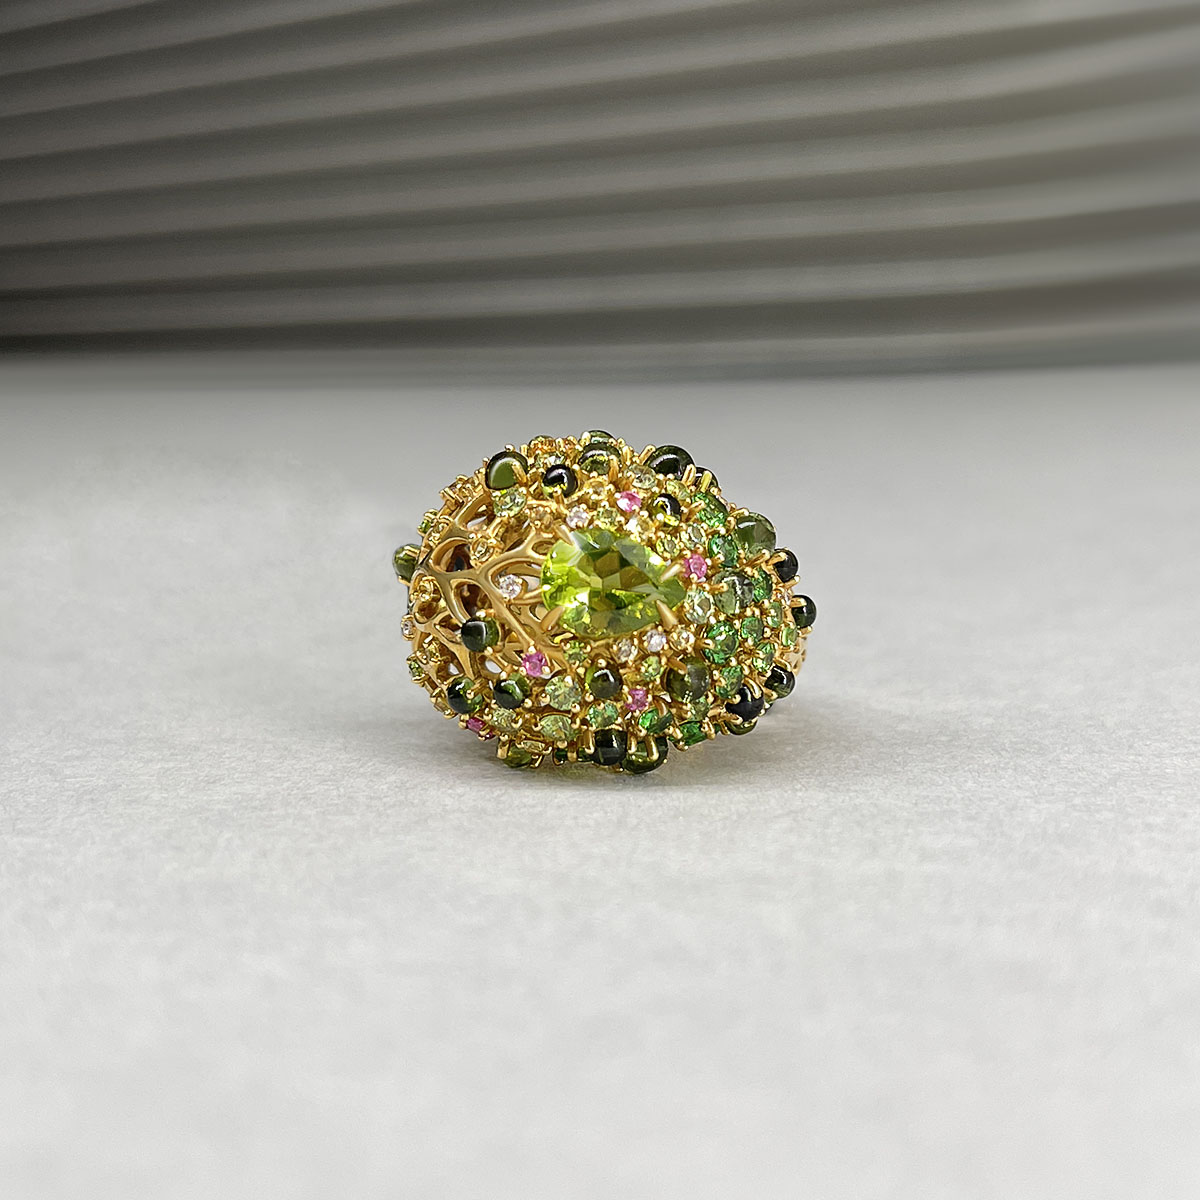 Кольцо с бриллиантами, хризолитом, турмалином, демантоидом, тсаворитом, сапфиром фантазийным из желтого золота 750 пробы, фото № 2